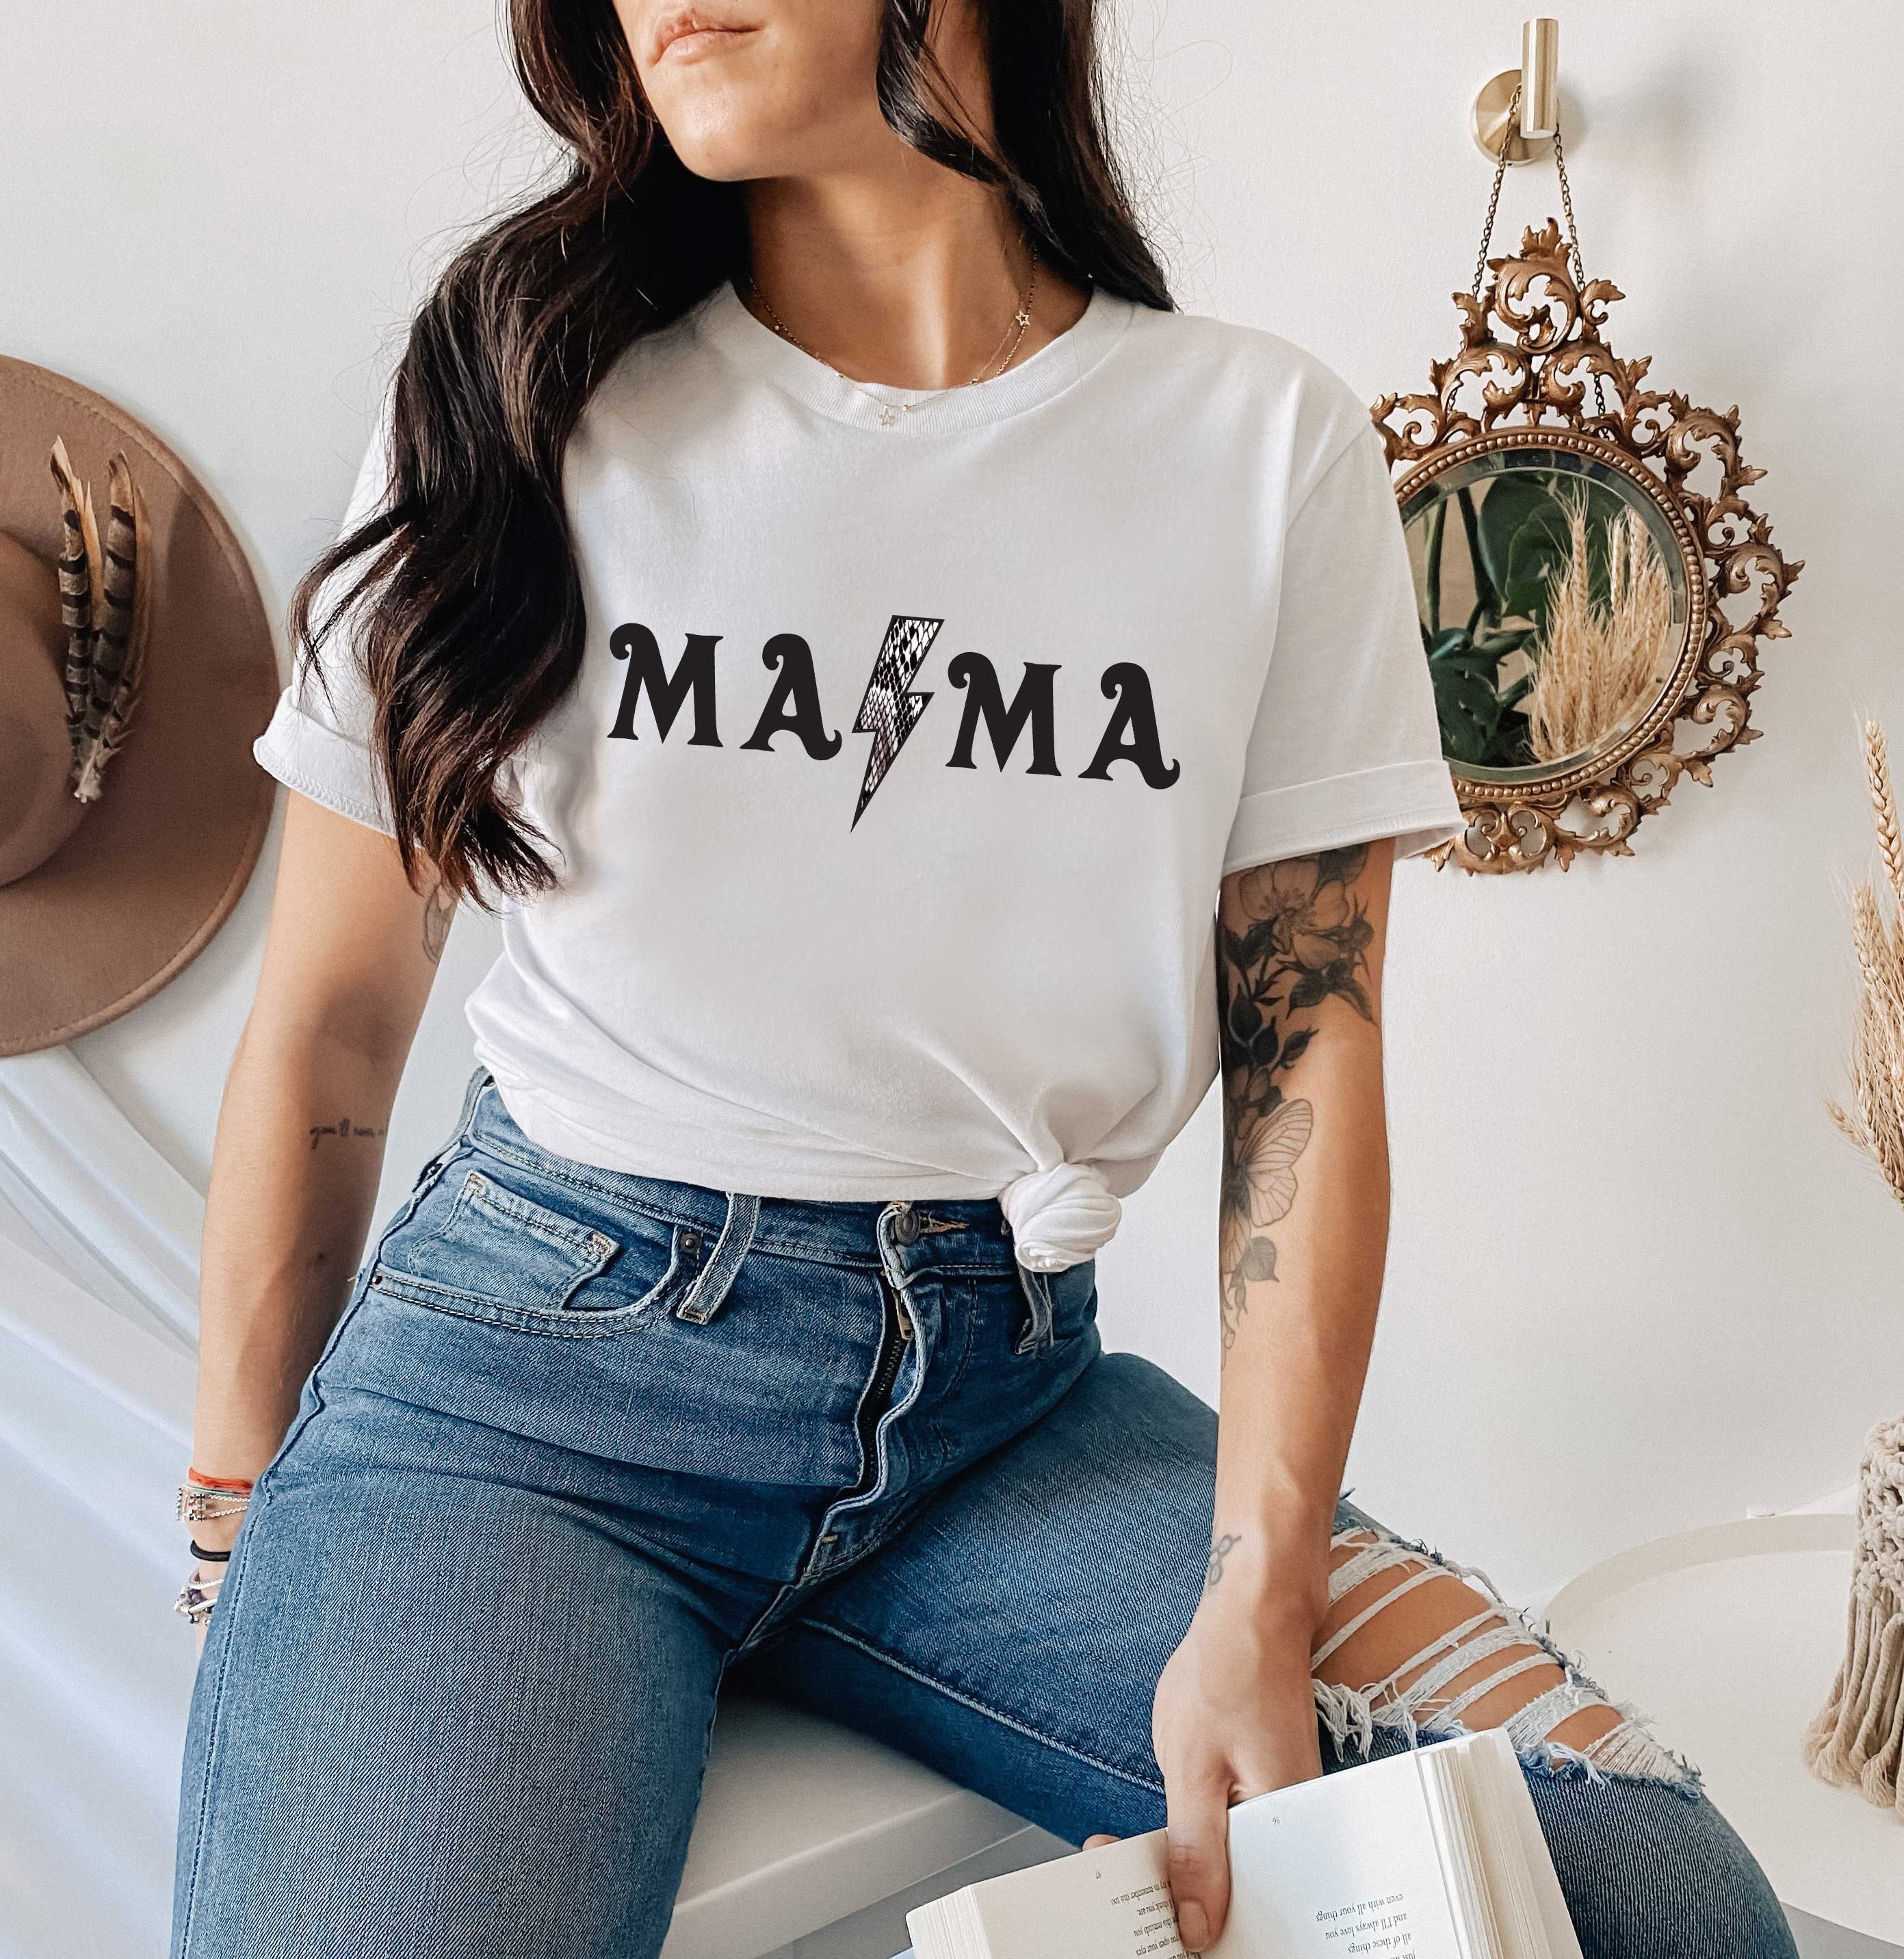 Mama Rocker Shirt Mama T-shirt Edgy Mom Mothers Day Gift - Etsy